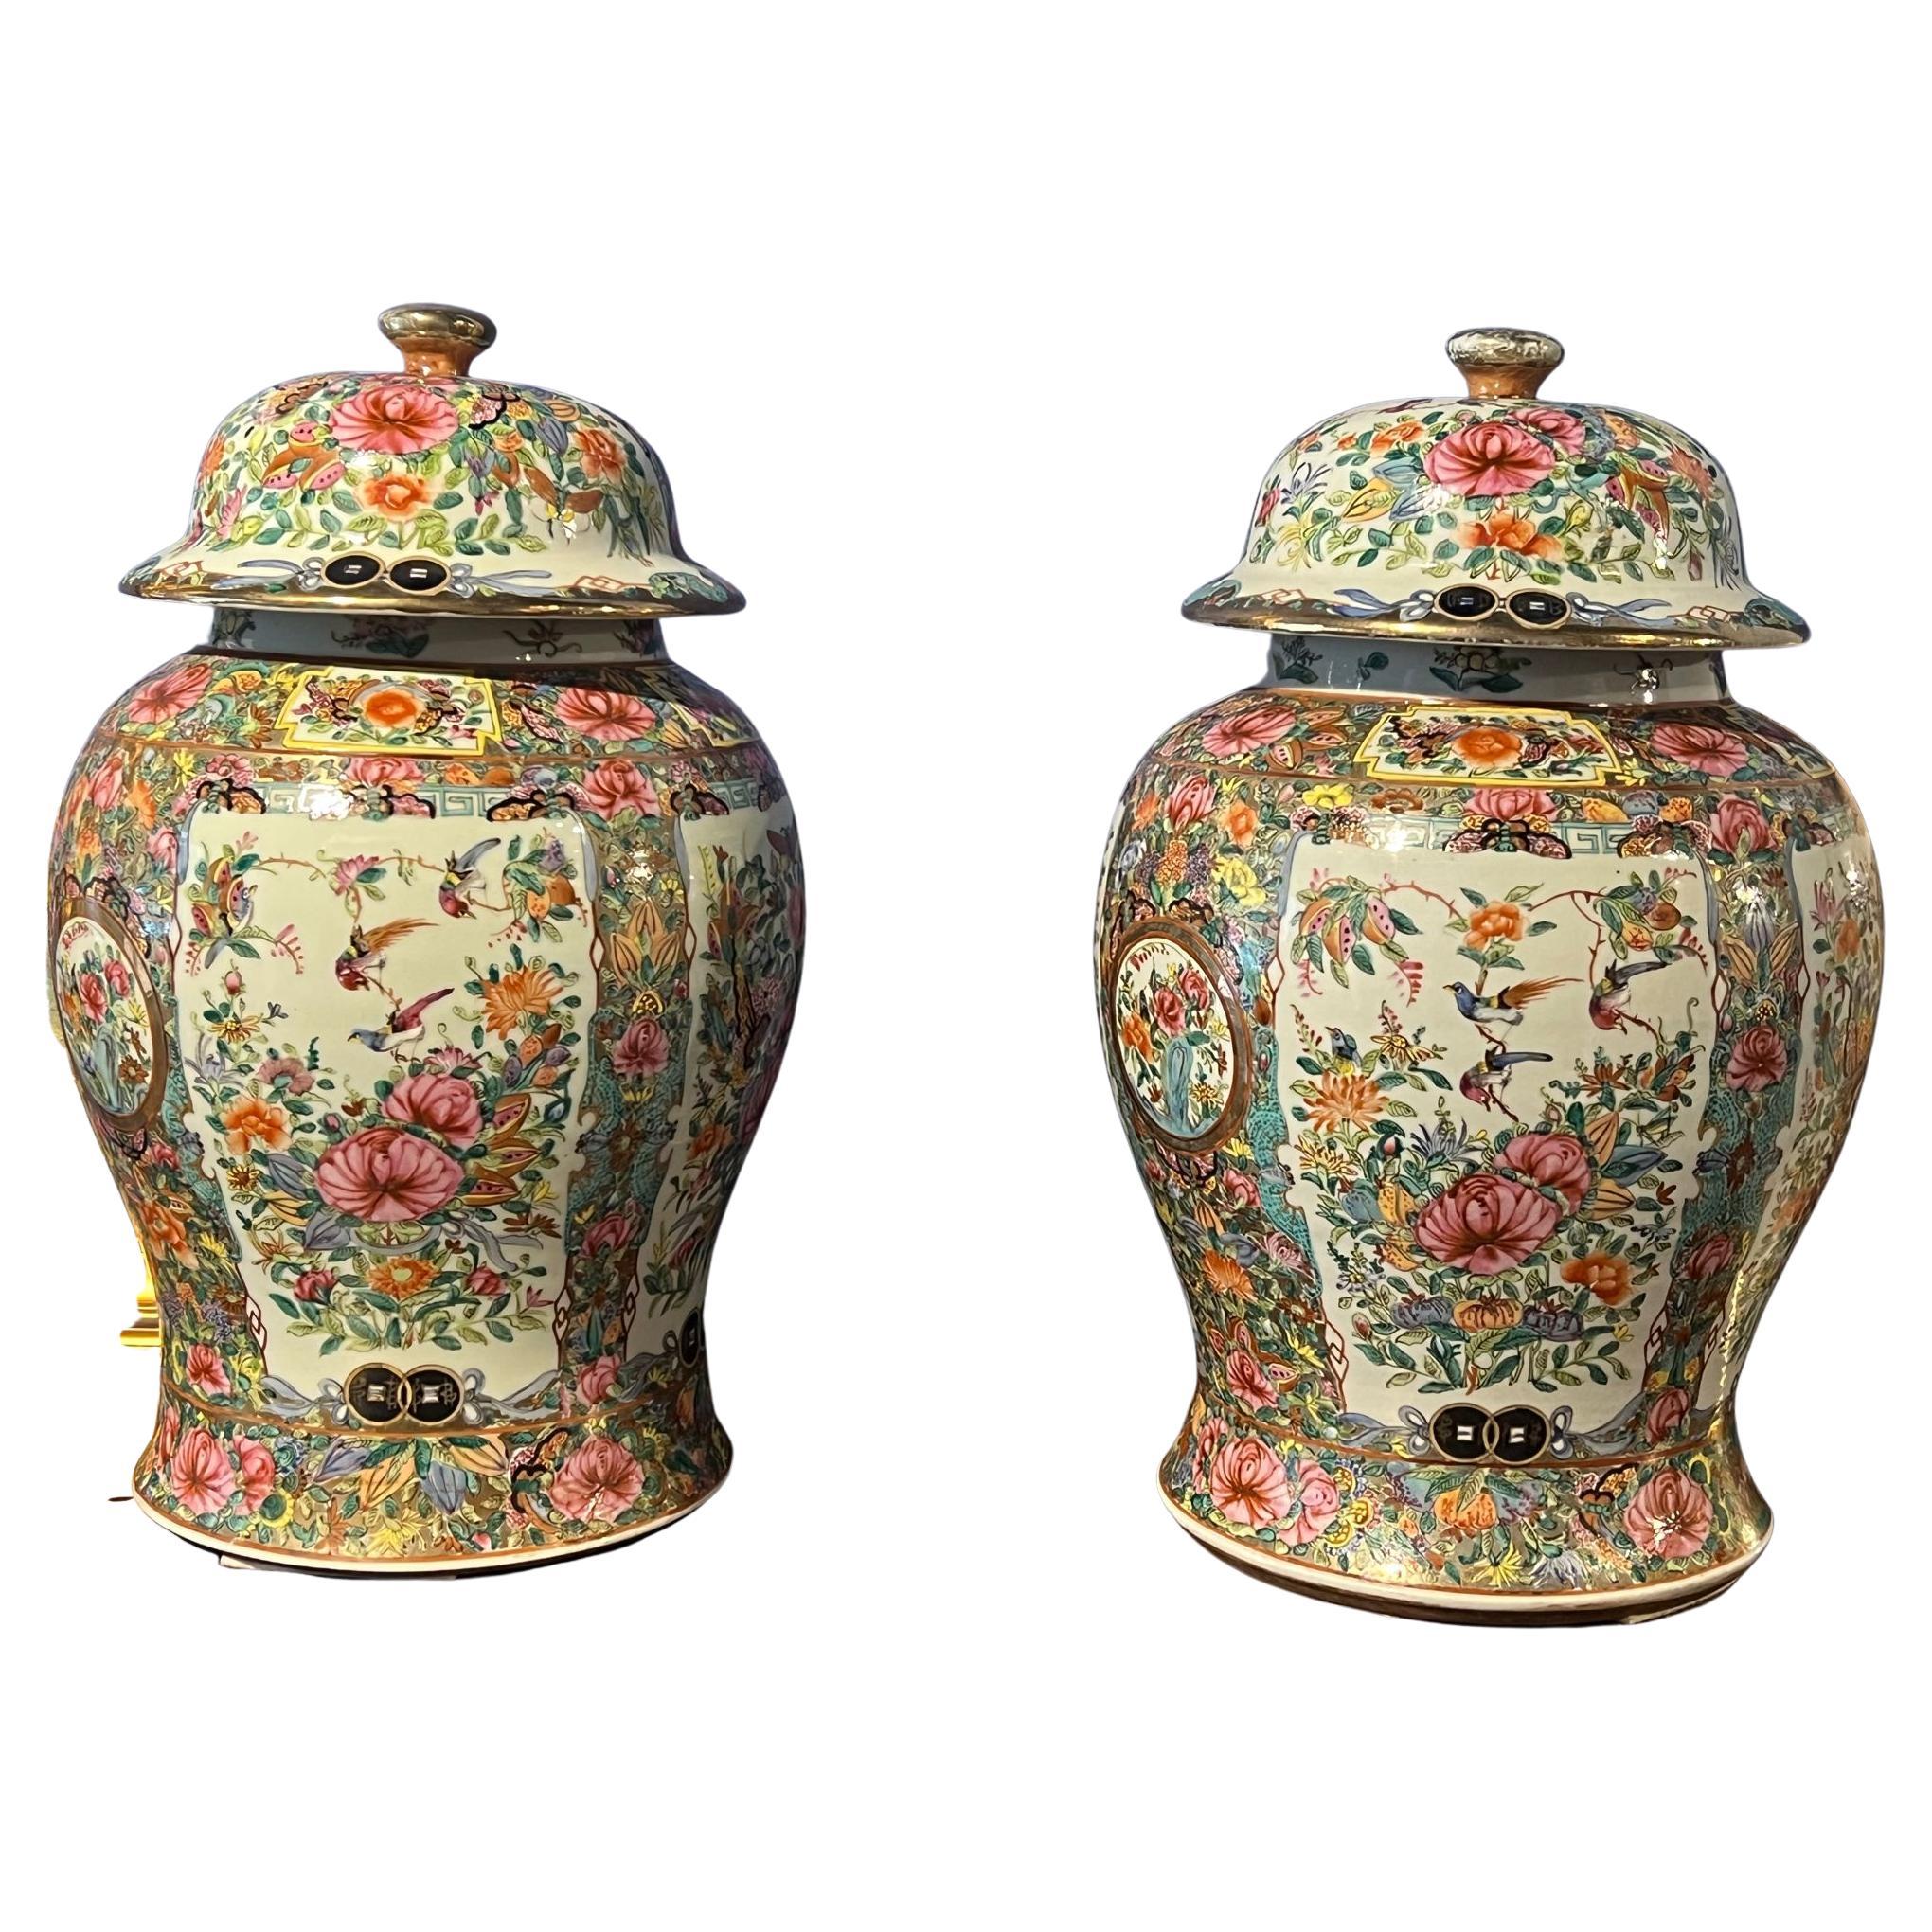 Schönes Paar chinesischer Mandarin-Vasen aus dem 19. Jahrhundert